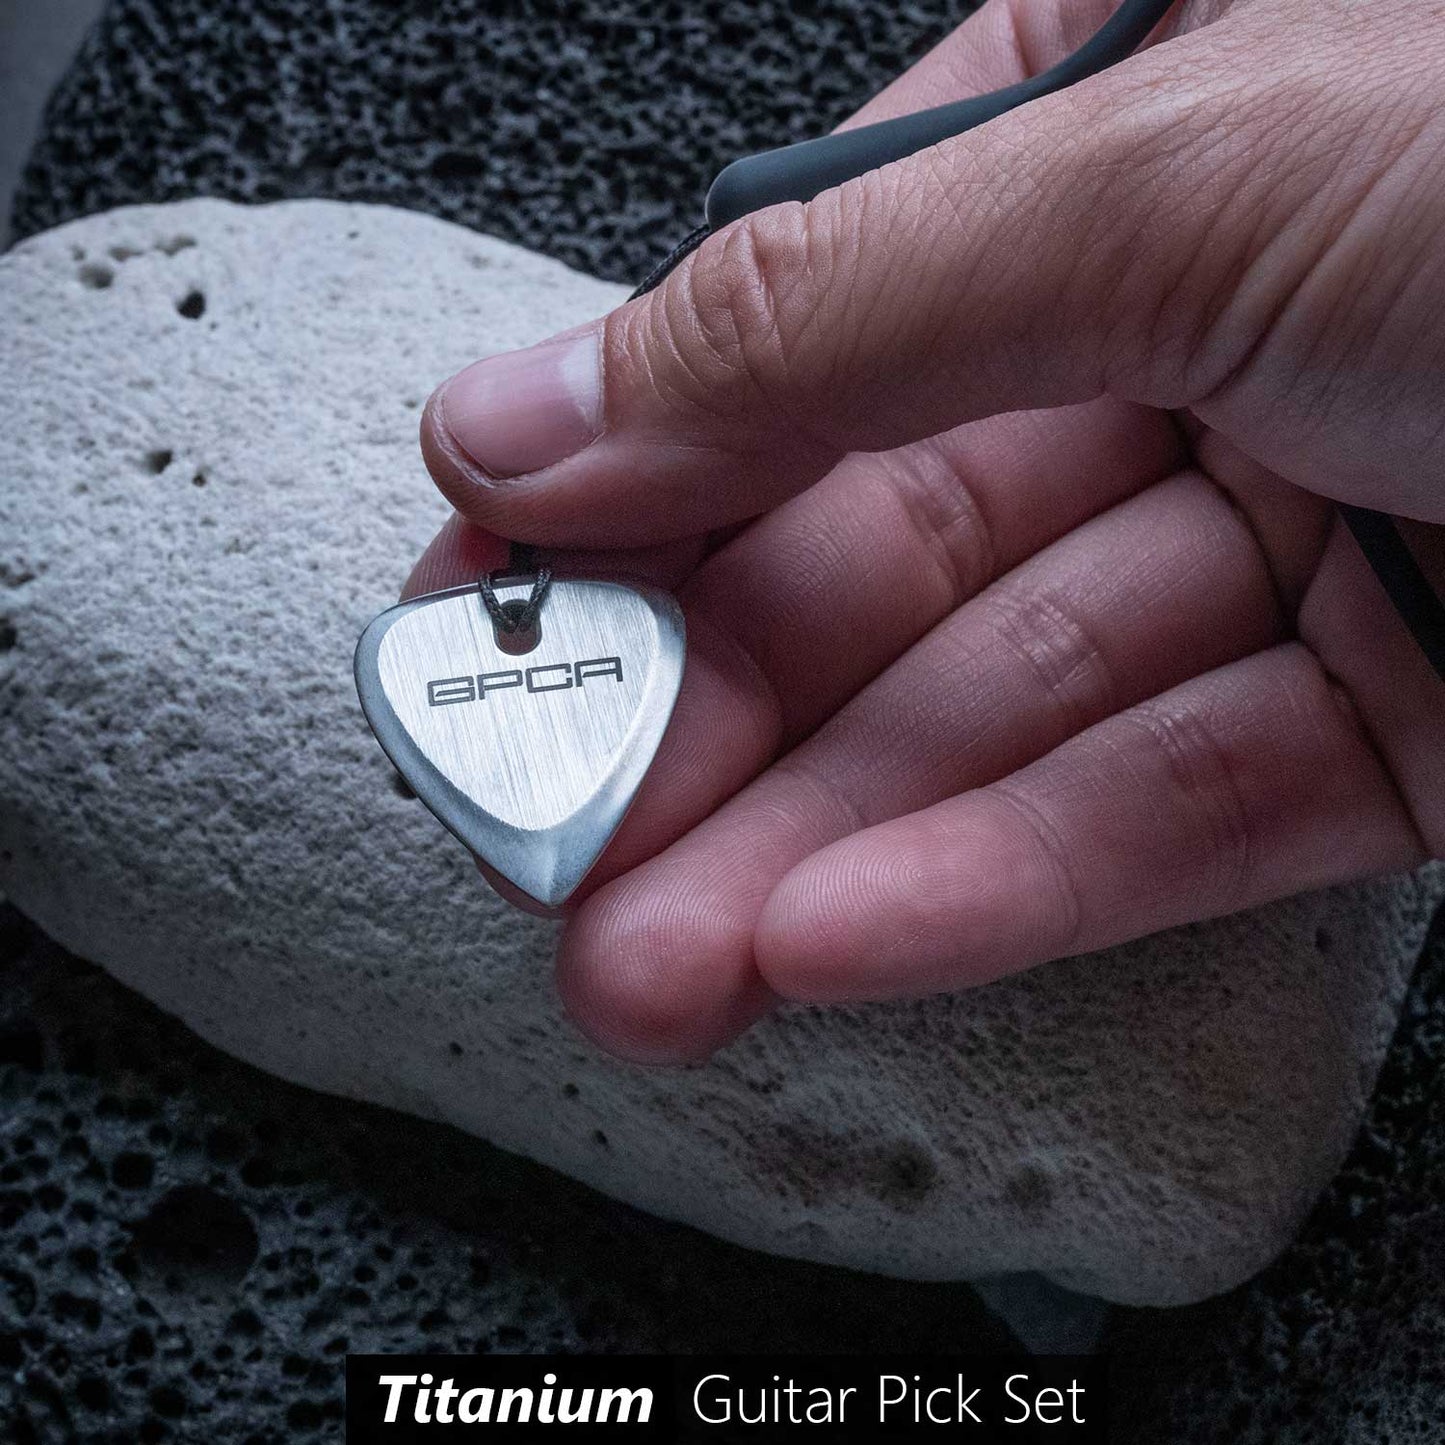 Titanium Guitar Picks by Superior Titanium